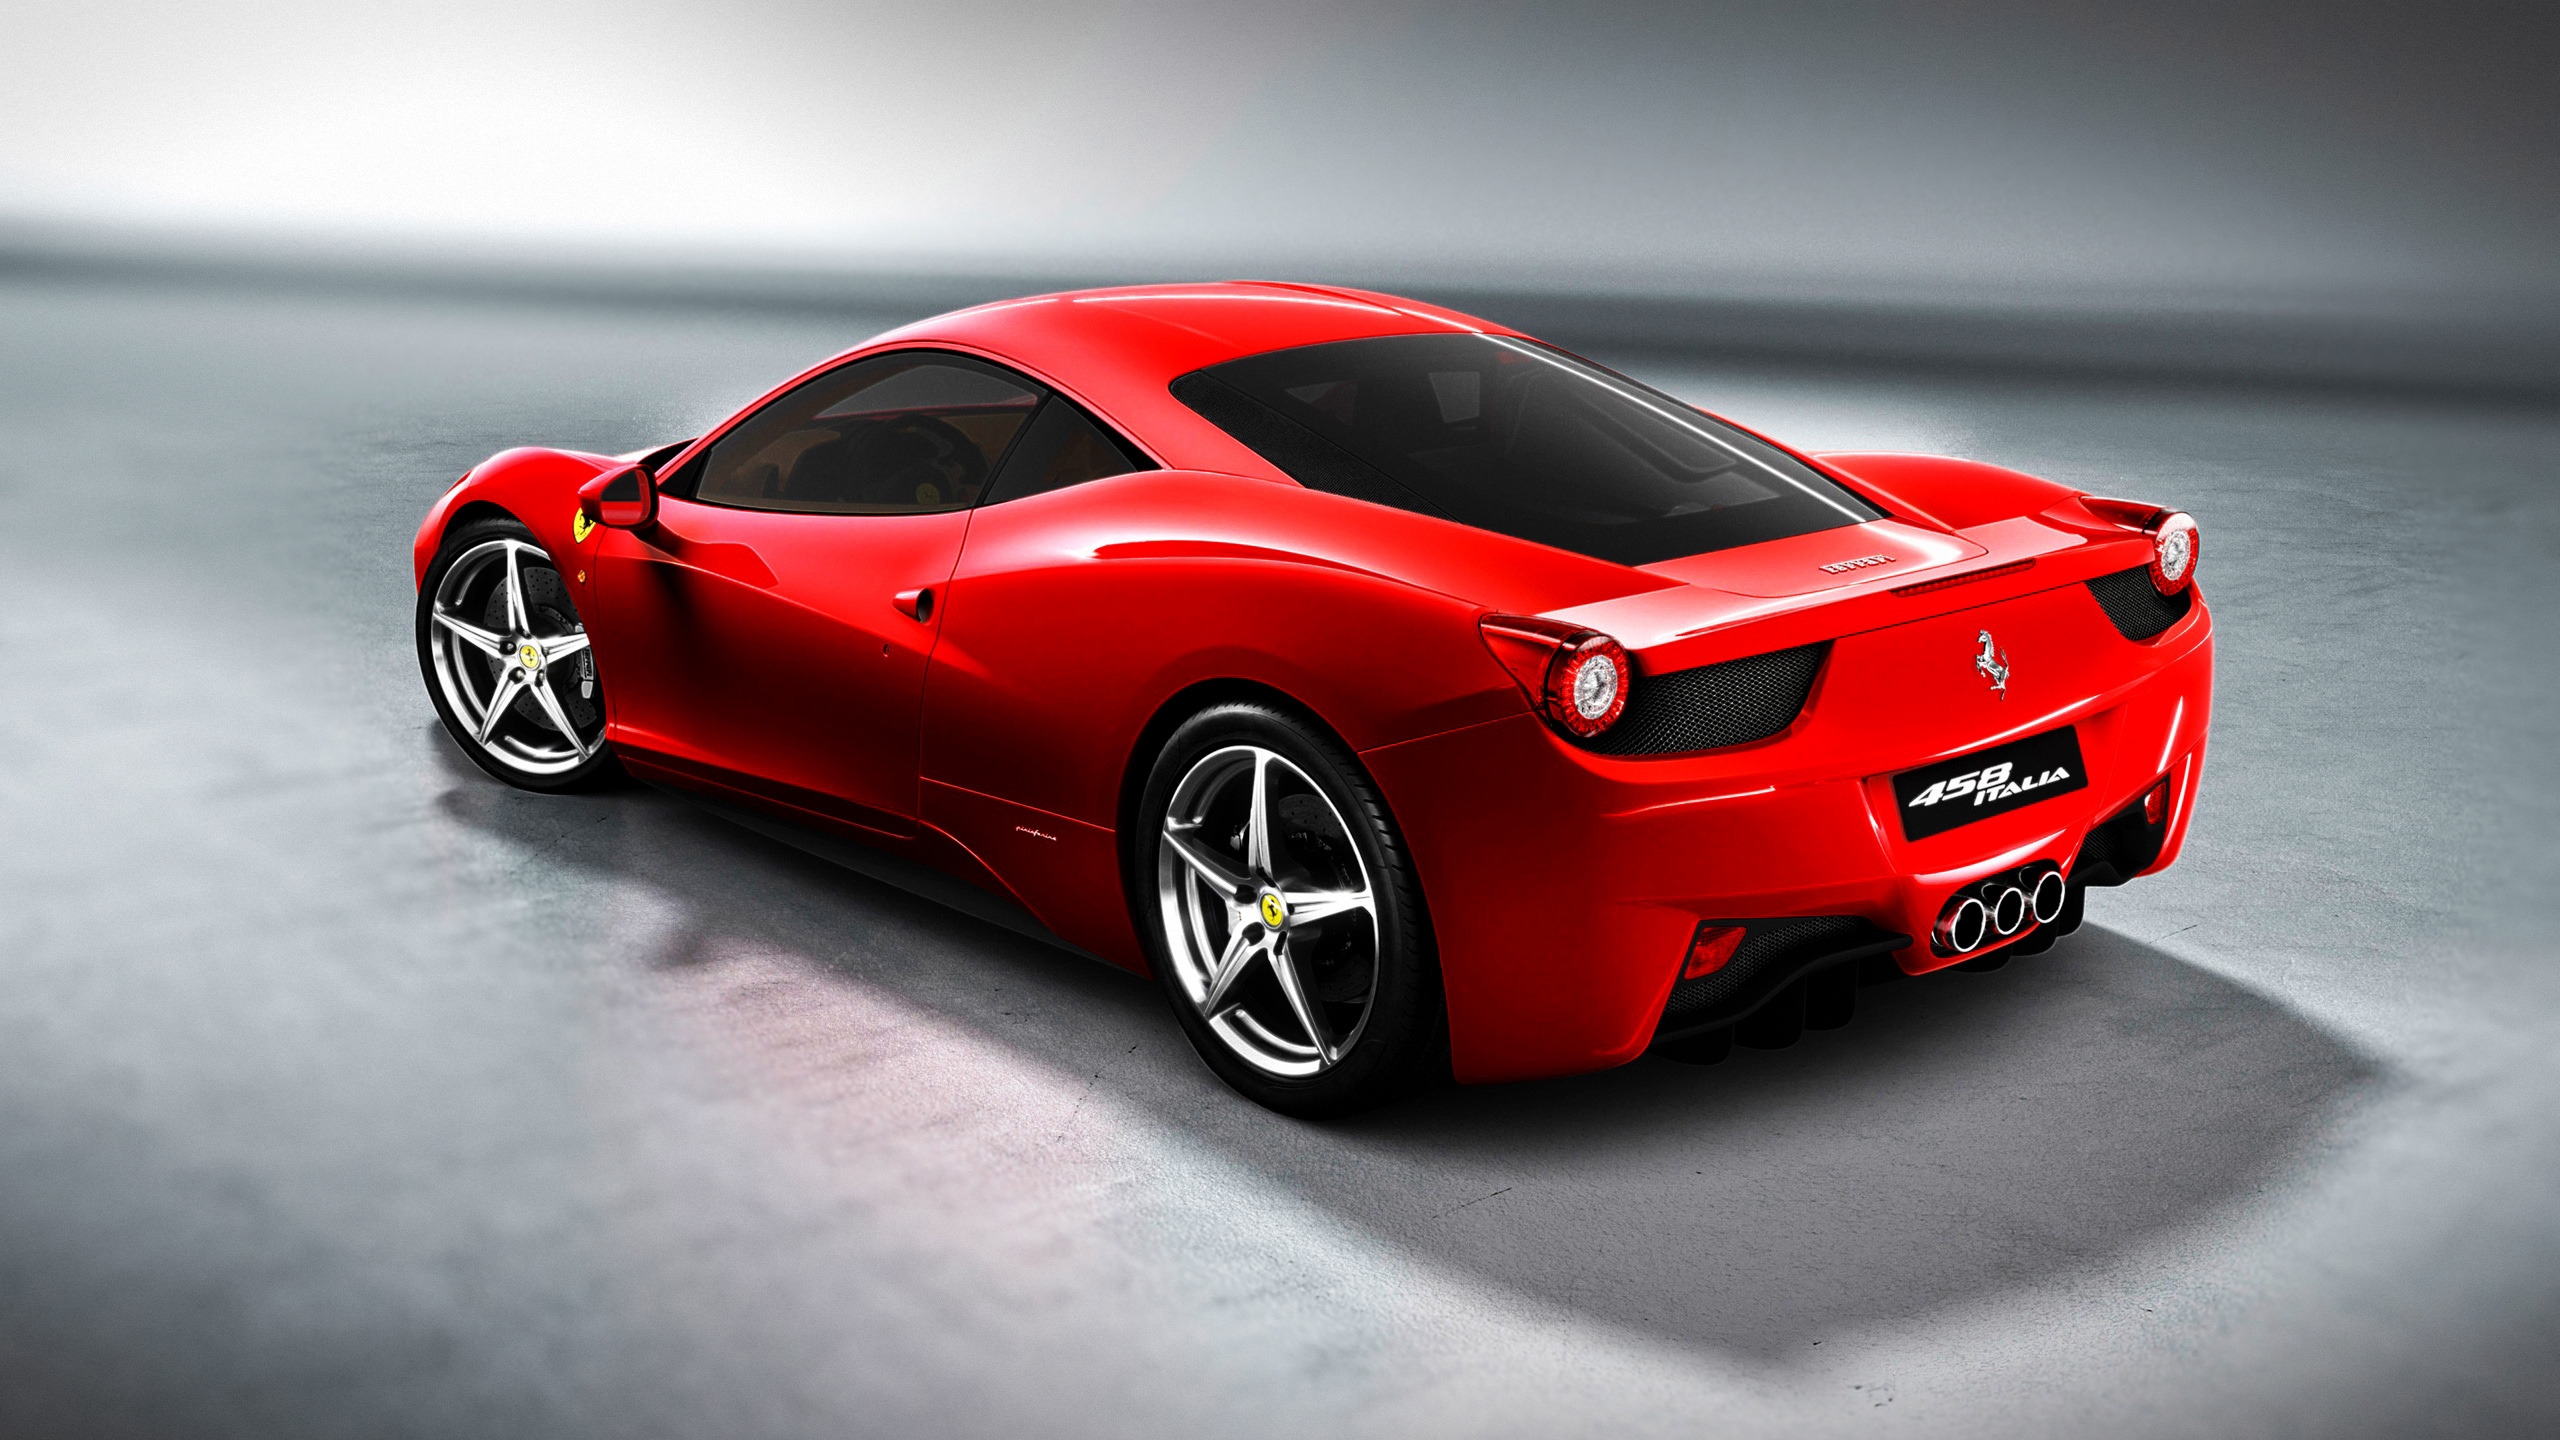 Ferrari 458 for 2560x1440 HDTV resolution